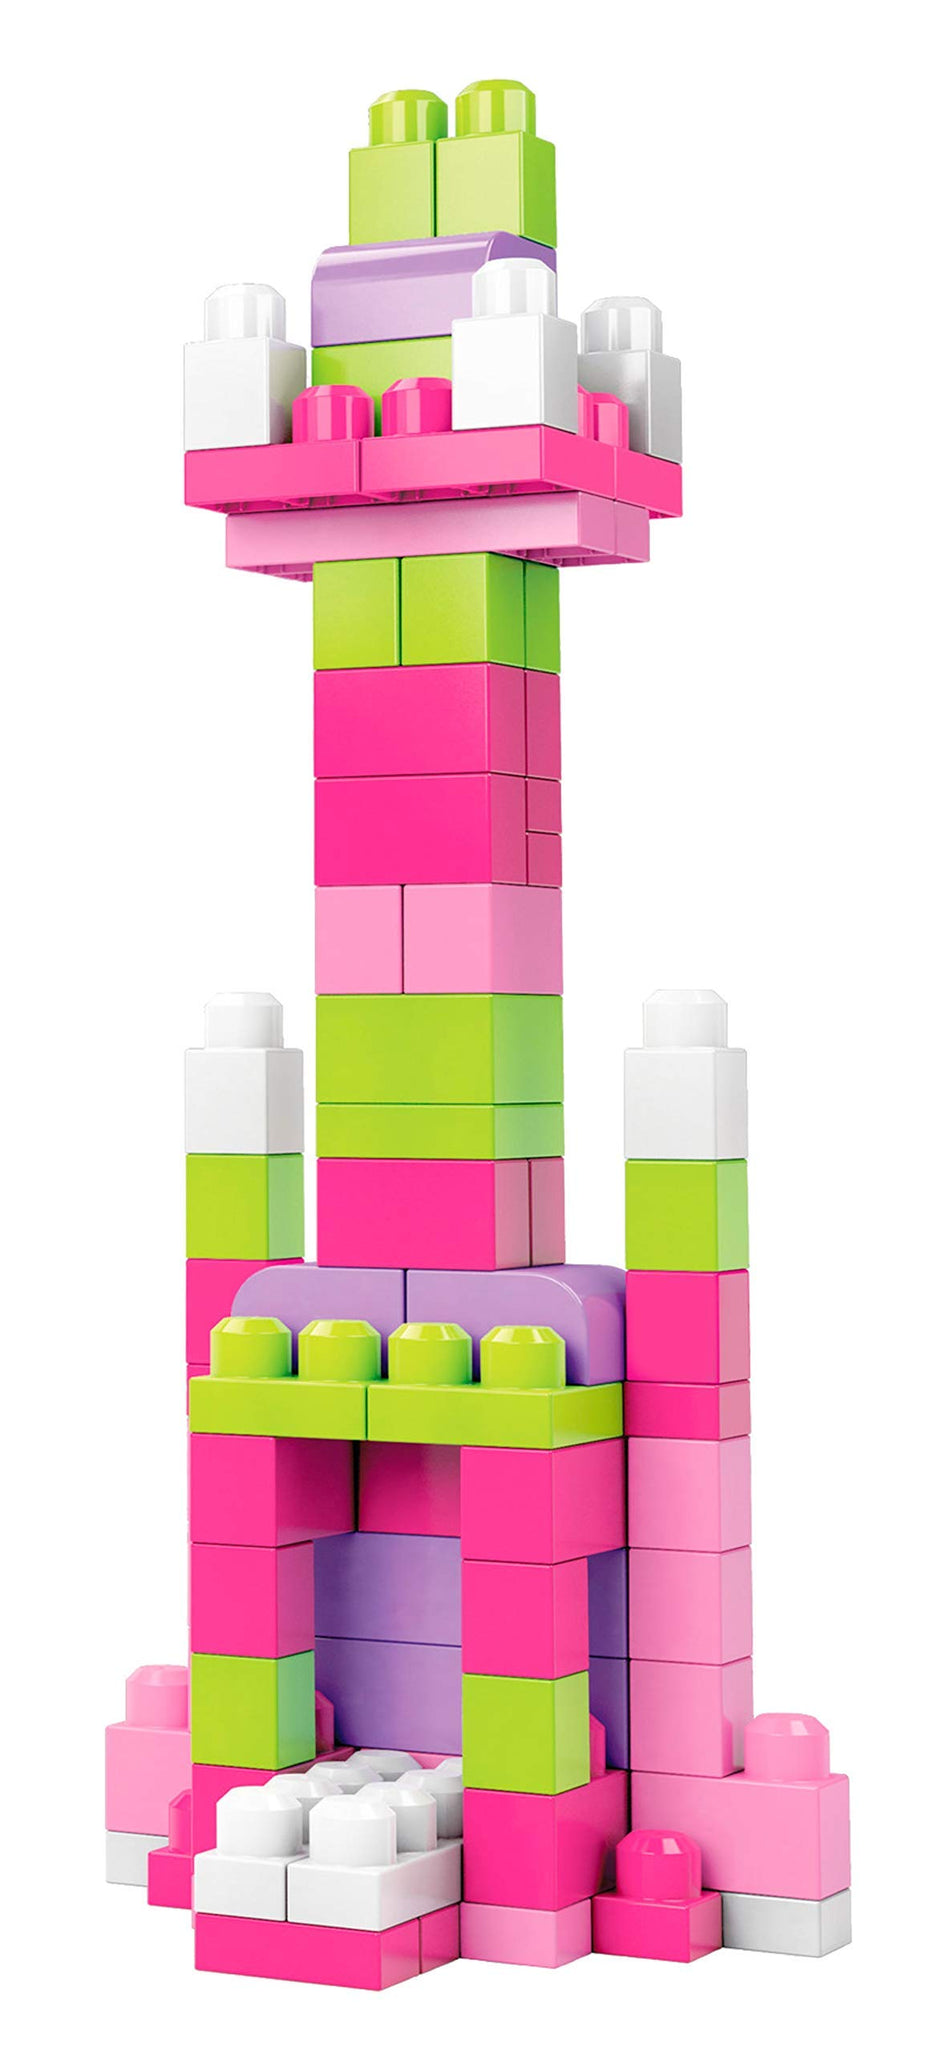 Mega Bloks First Builders Big Building Bag with Big Building Blocks, Building Toys for Toddlers (80 Pieces) - Pink Bag